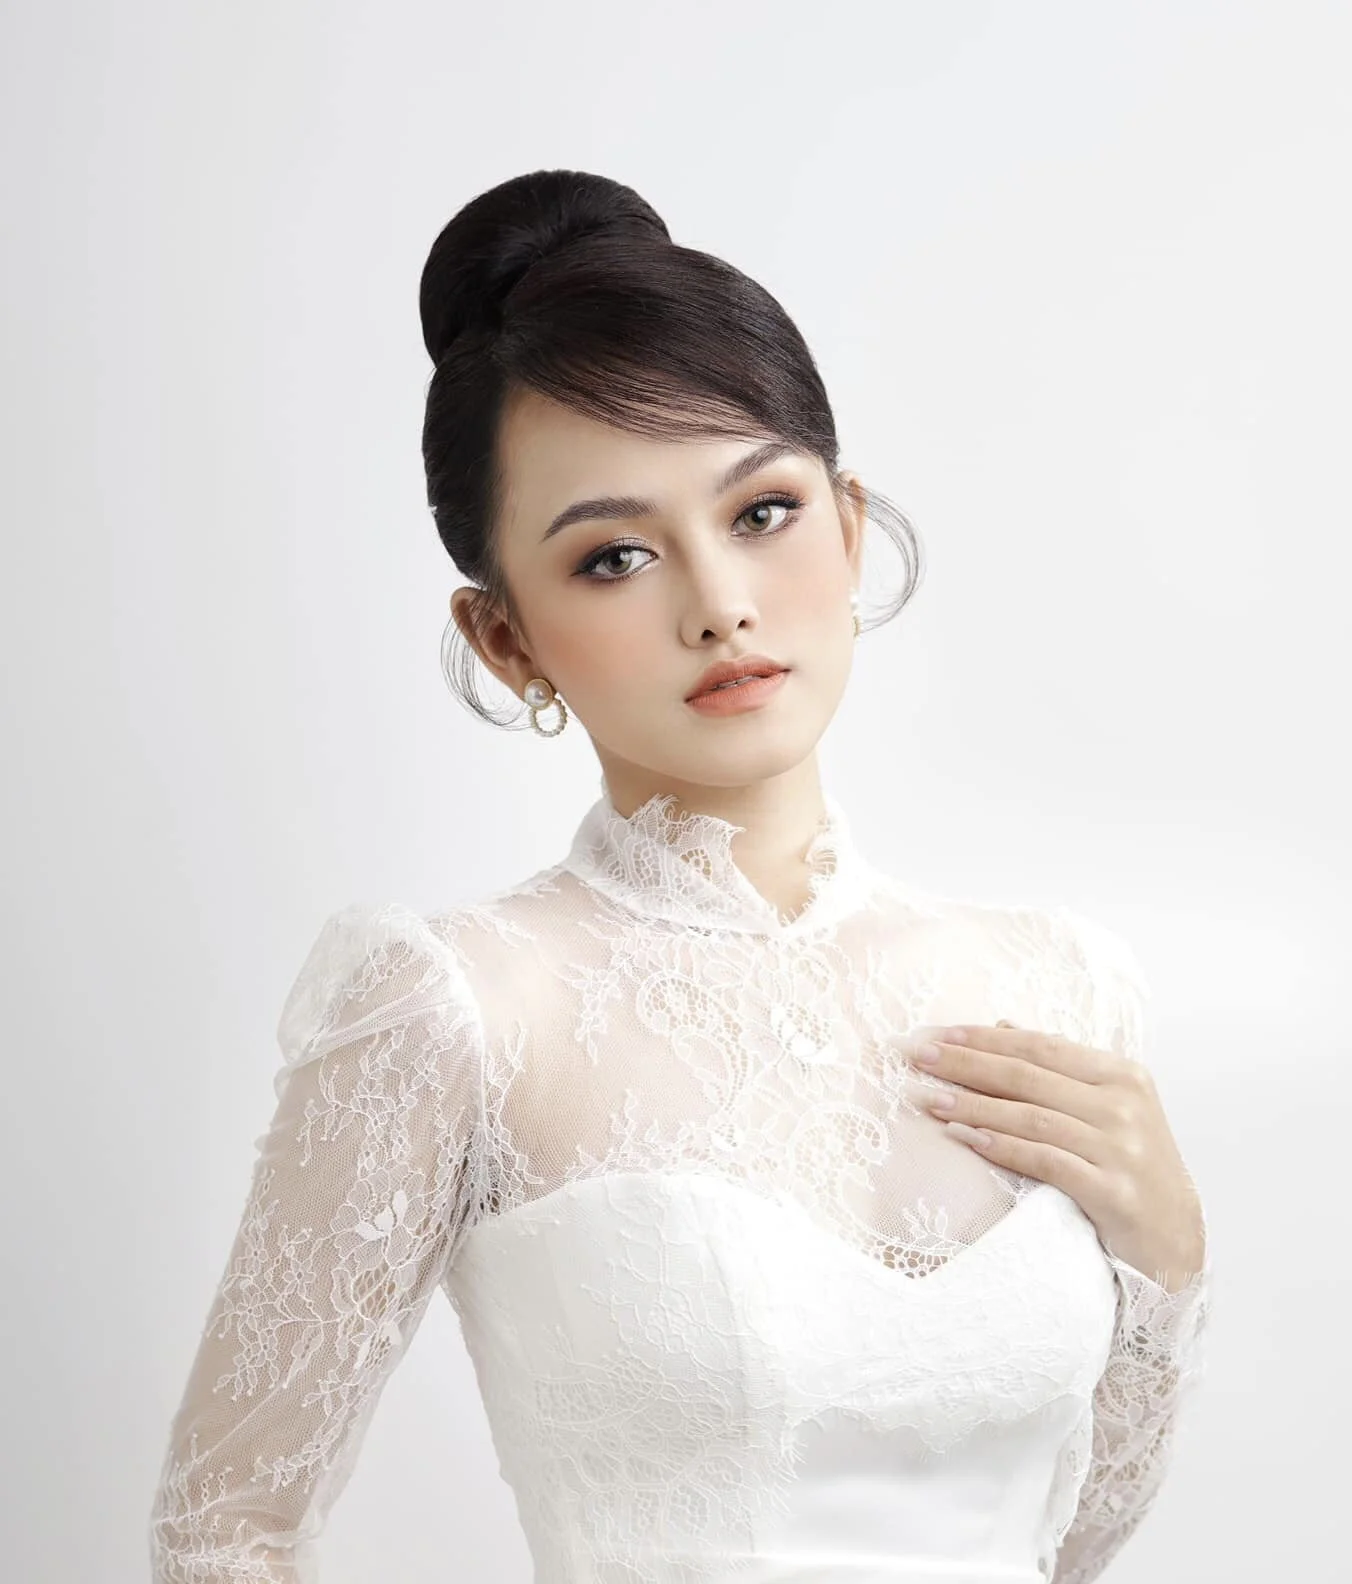 Hoa hậu Đỗ Mỹ Linh hoá cô dâu đẹp dịu dàng trong loạt ảnh mới | VOV.VN